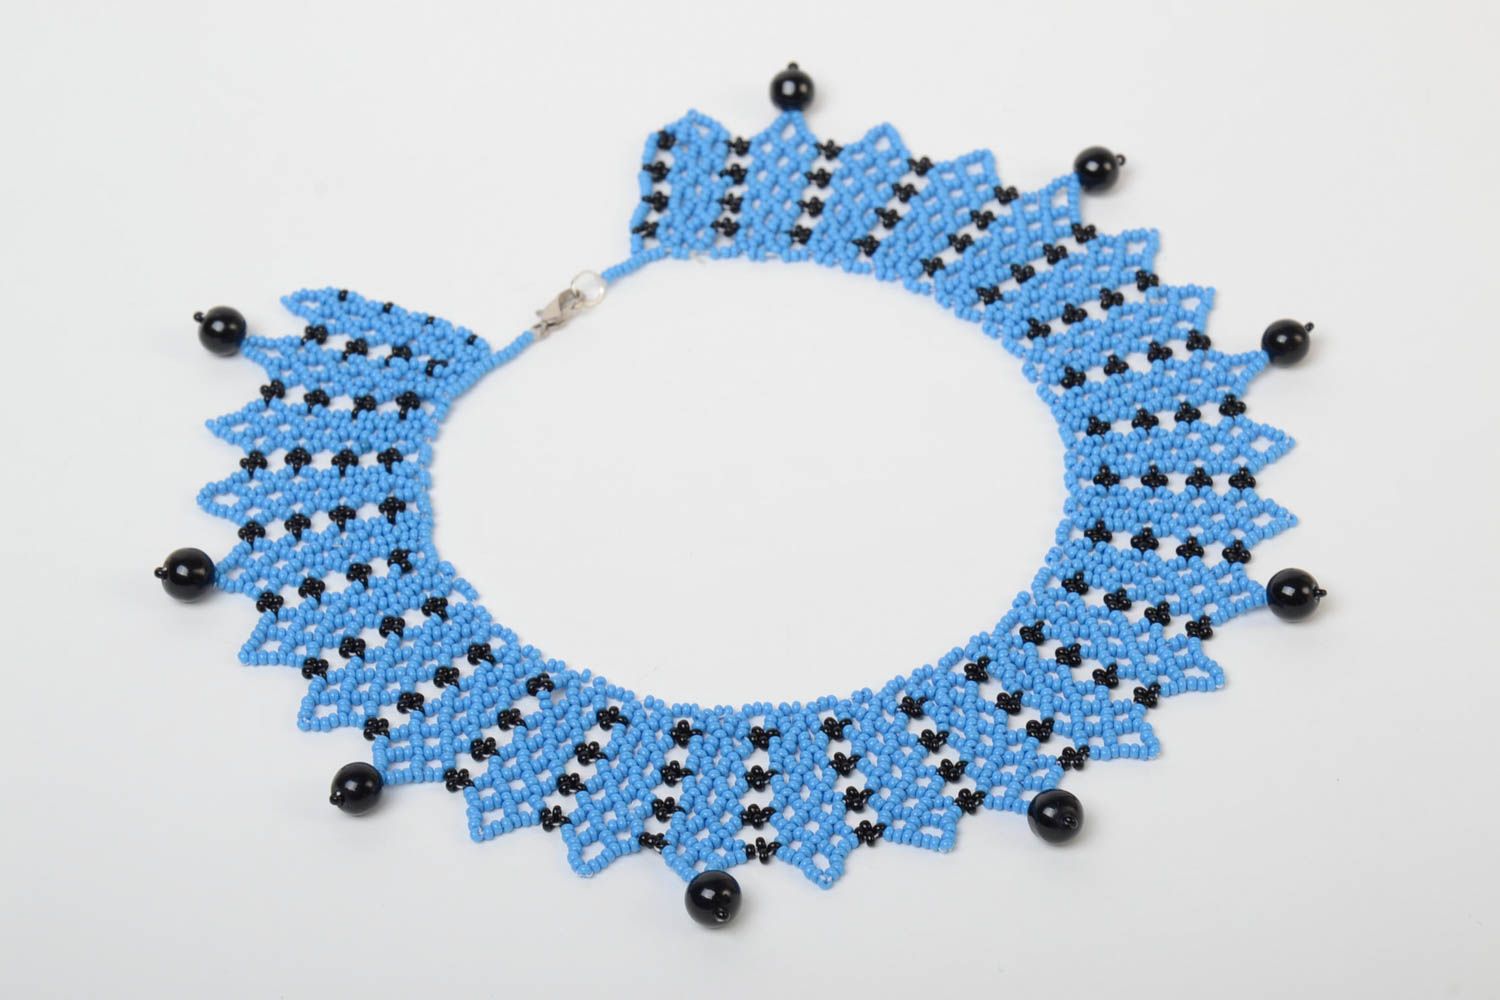 Ожерелье из бисера голубое с черным красивое стильное необычное ручной работы фото 2